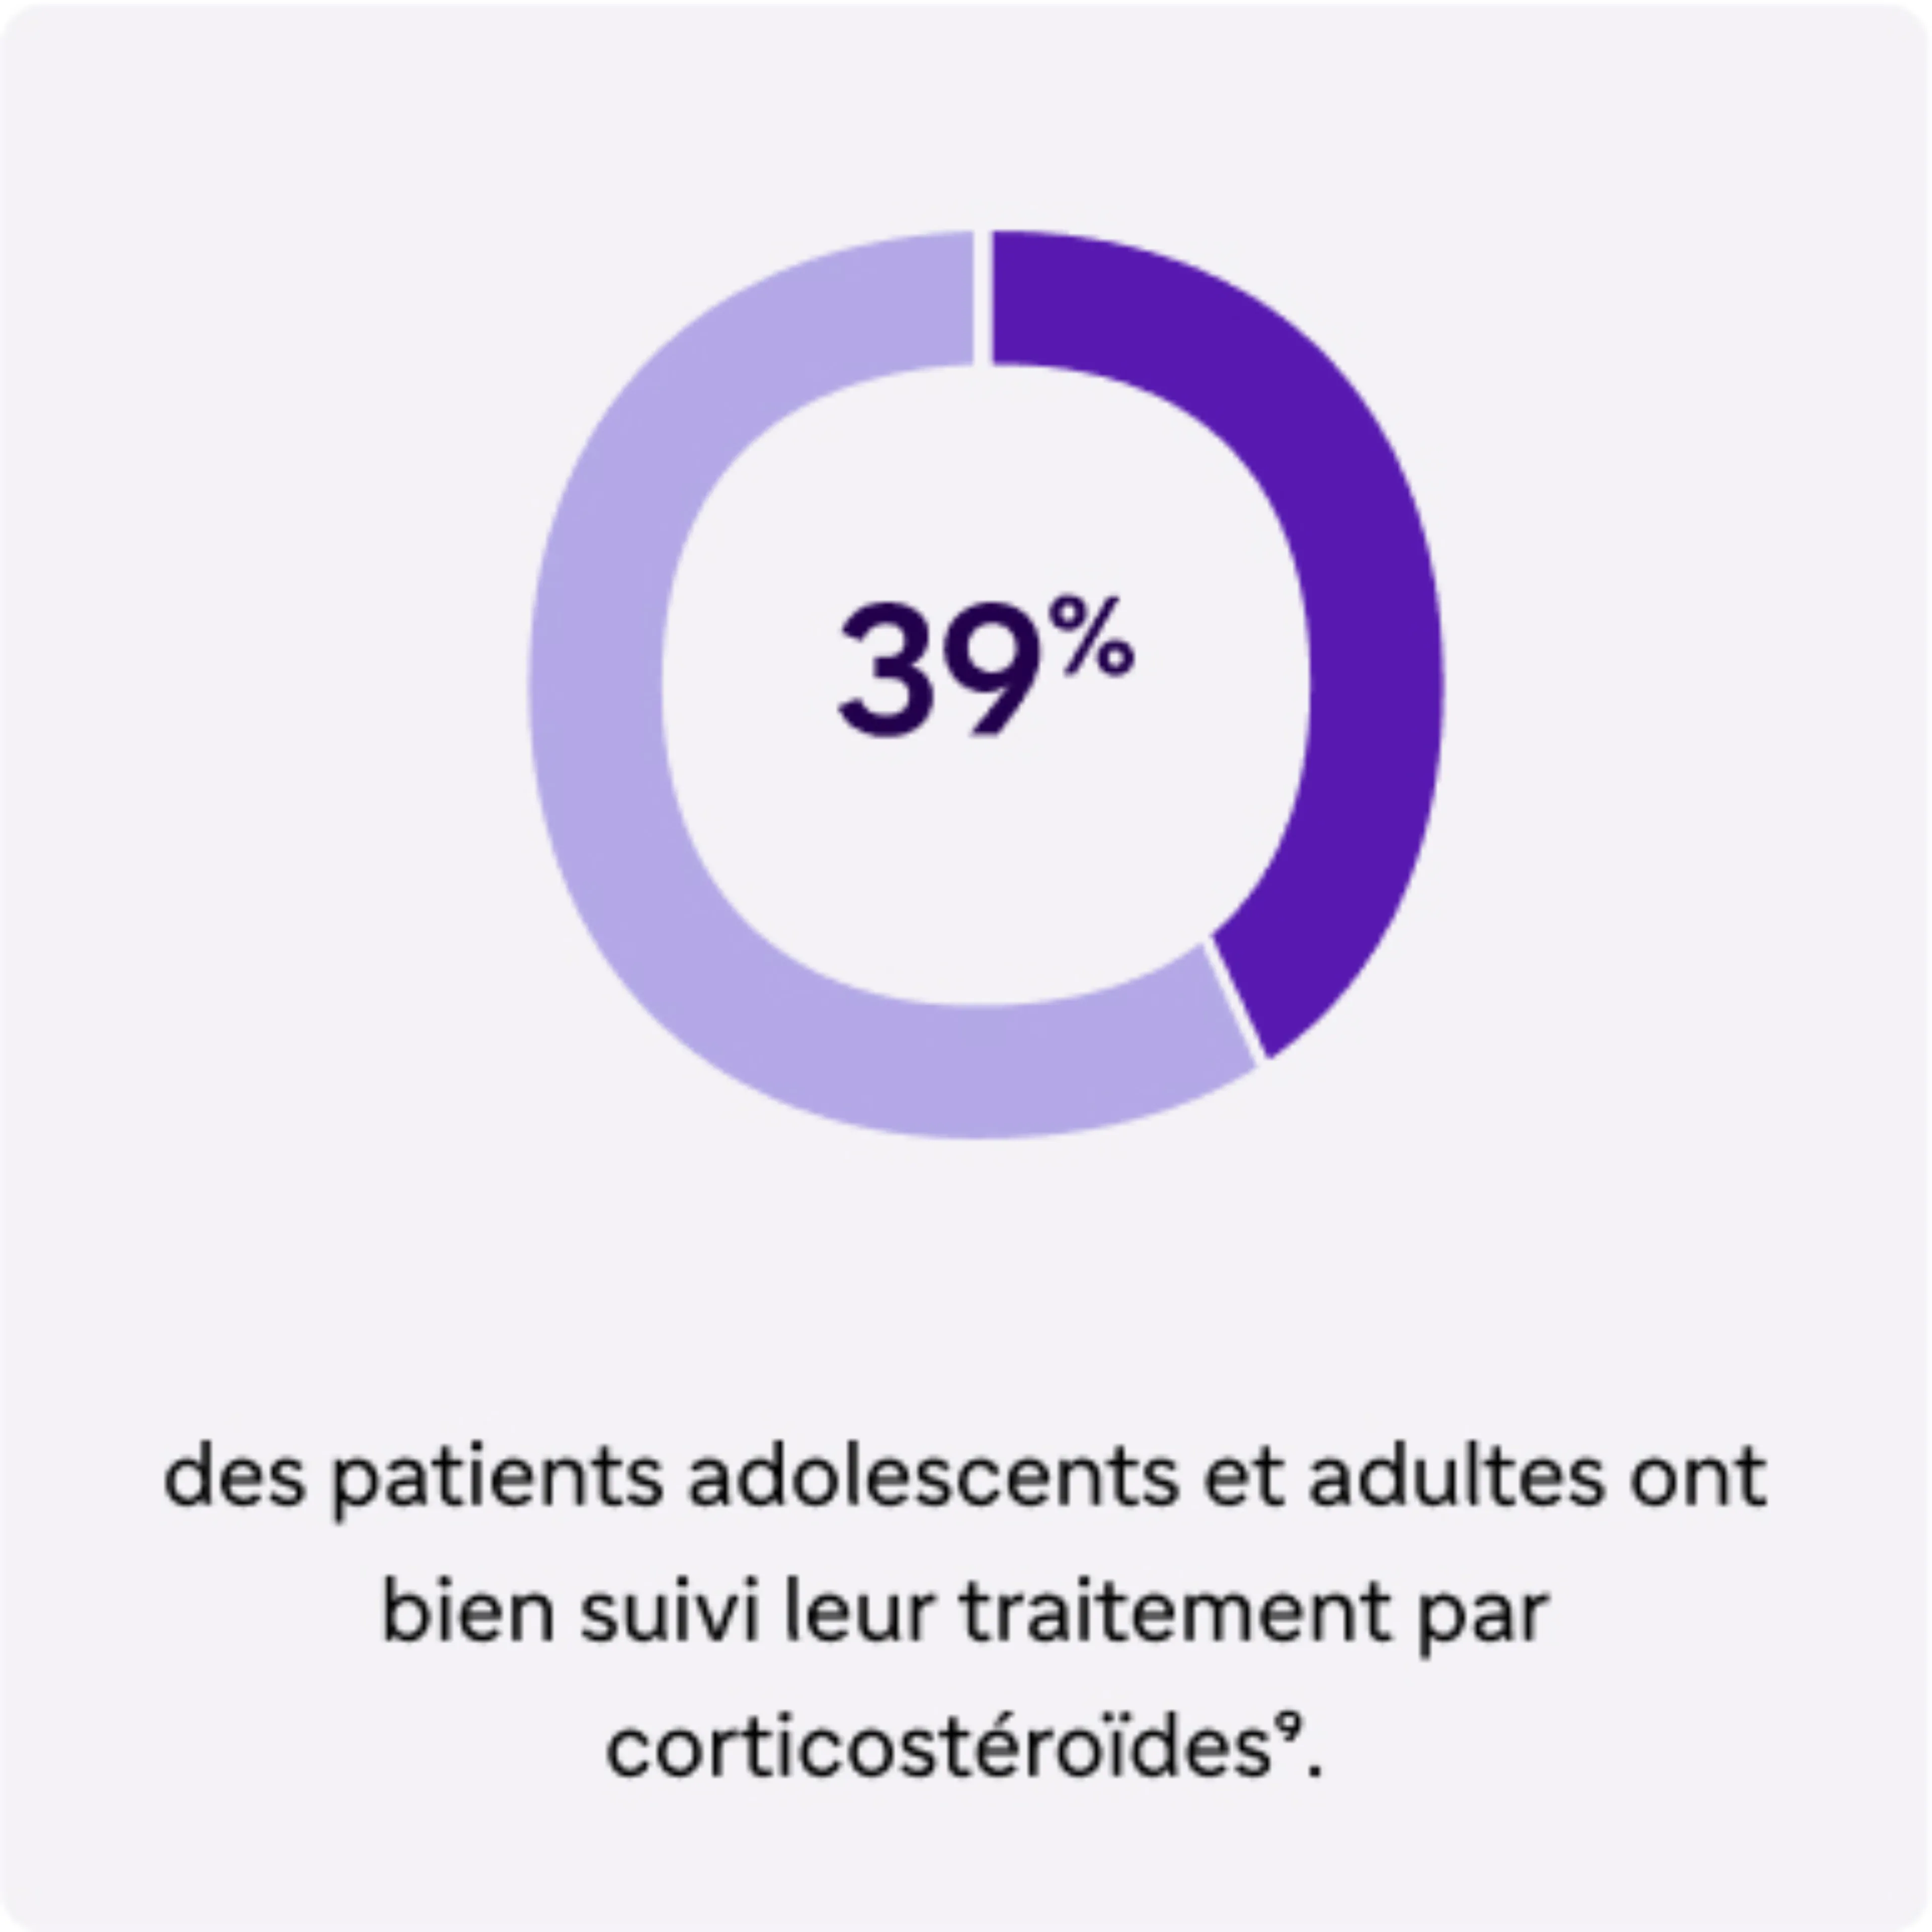 Carte 1 "39% des patients adolescents et adultes ont bien suivi leur traitement par corticostéroïdes"